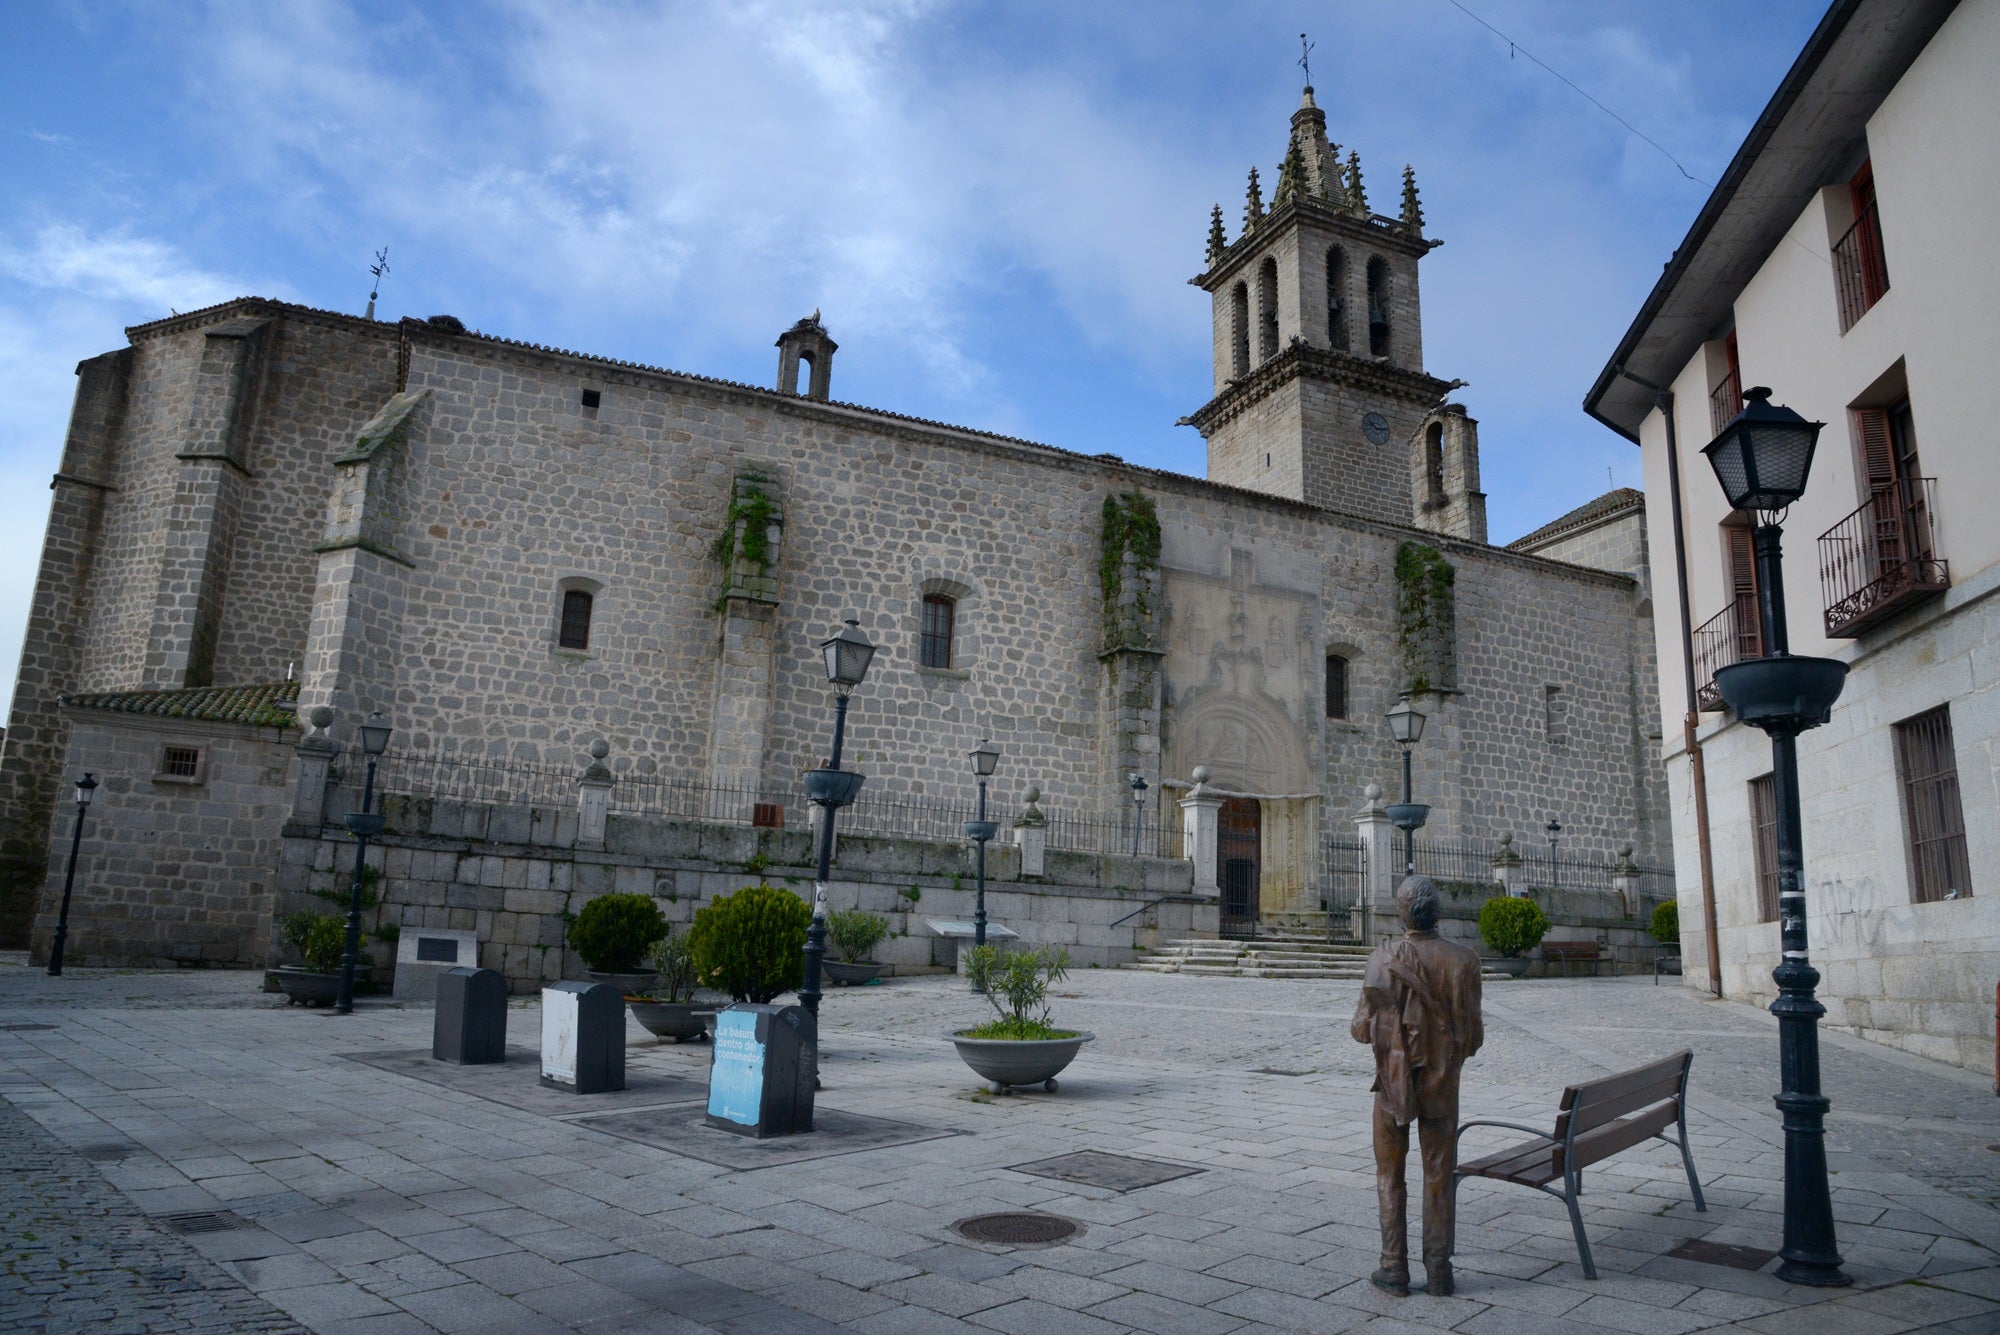 La basílica de Nuestra Señora de la Asunción es uno de los iconos arquitectónicos de Colmenar Viejo.